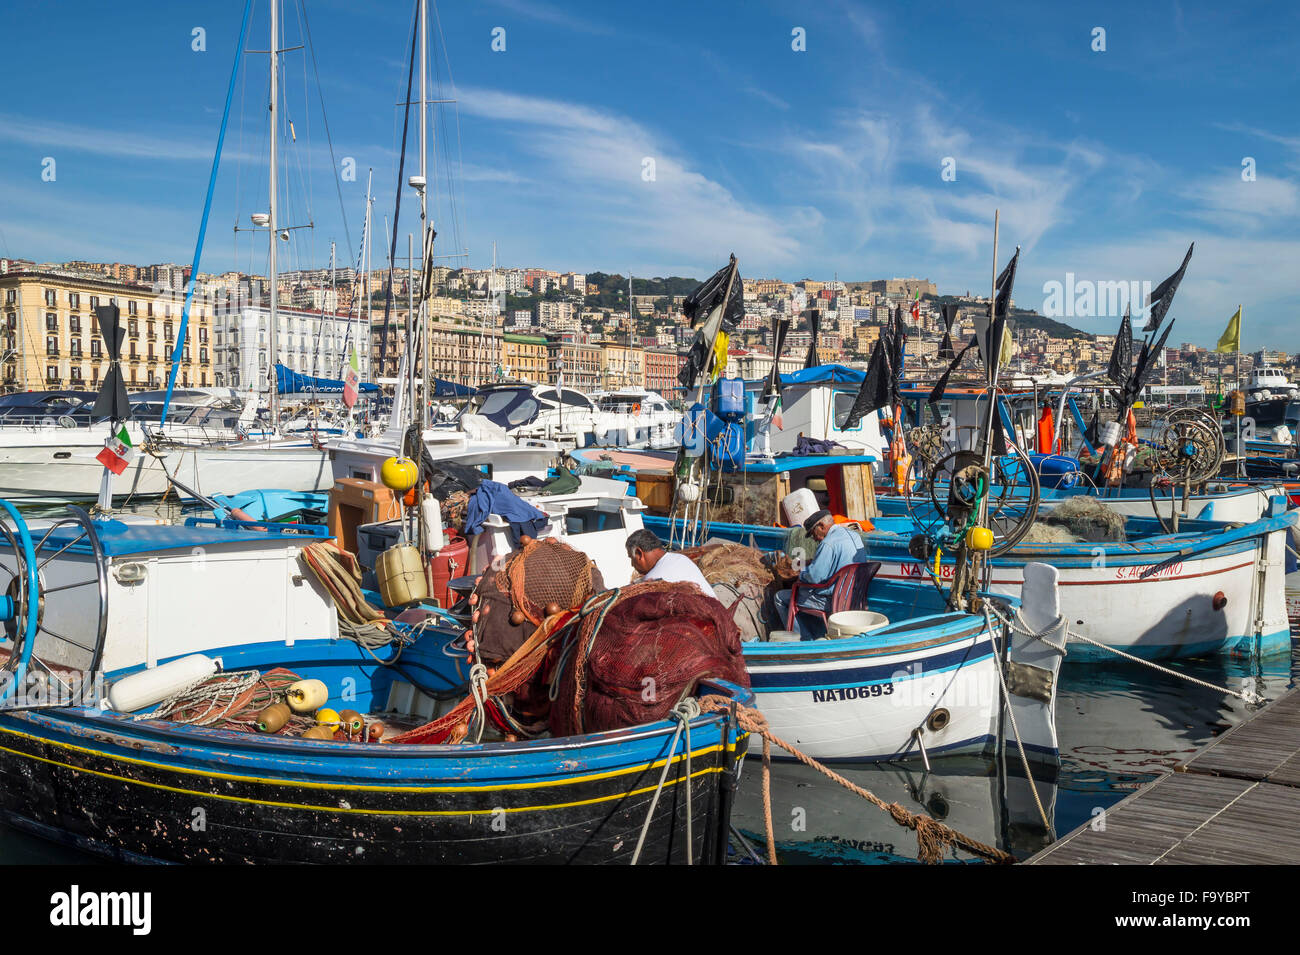 Colorata città vista di Napoli con le barche nel porto turistico di Mergellina e gli edifici resort sul lungomare seashore. Foto Stock